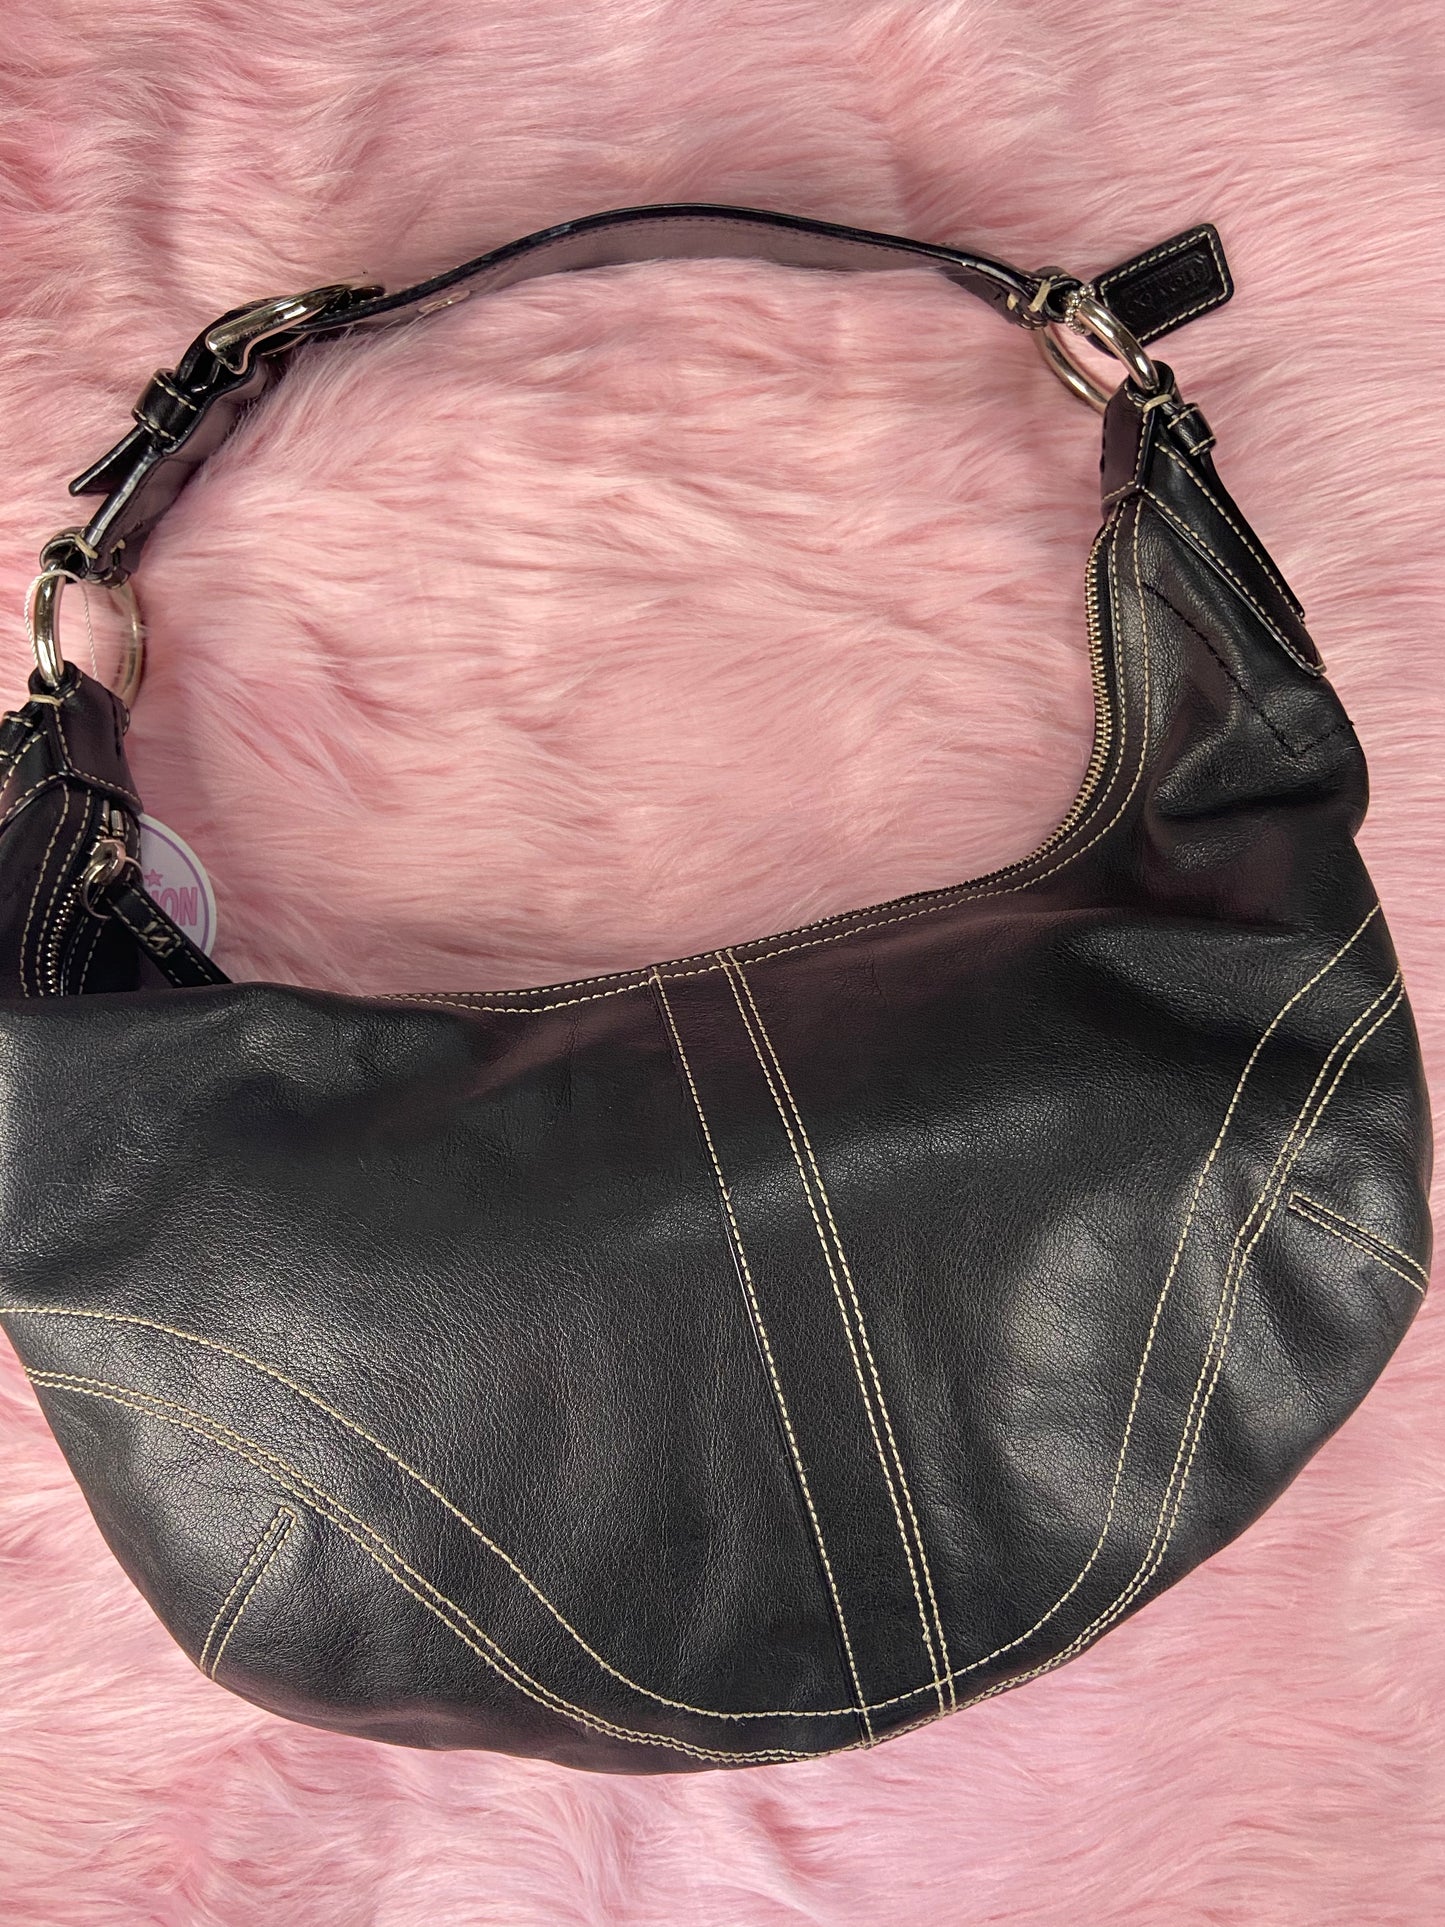 Black Leather Coach Shoulder Bag